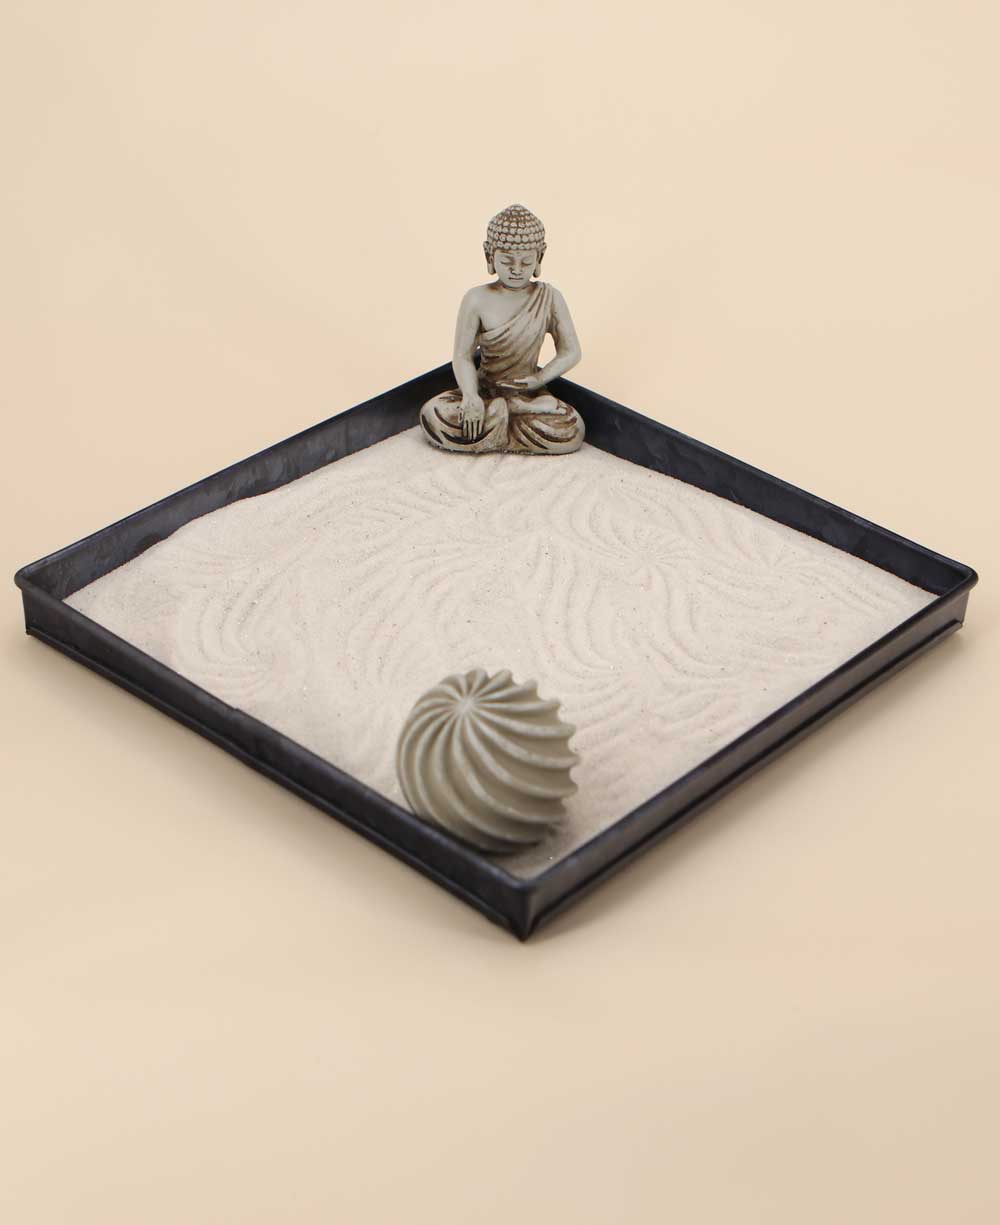 Minimalist Zen Orb Sand Art Buddha Zen Garden - Home & Garden